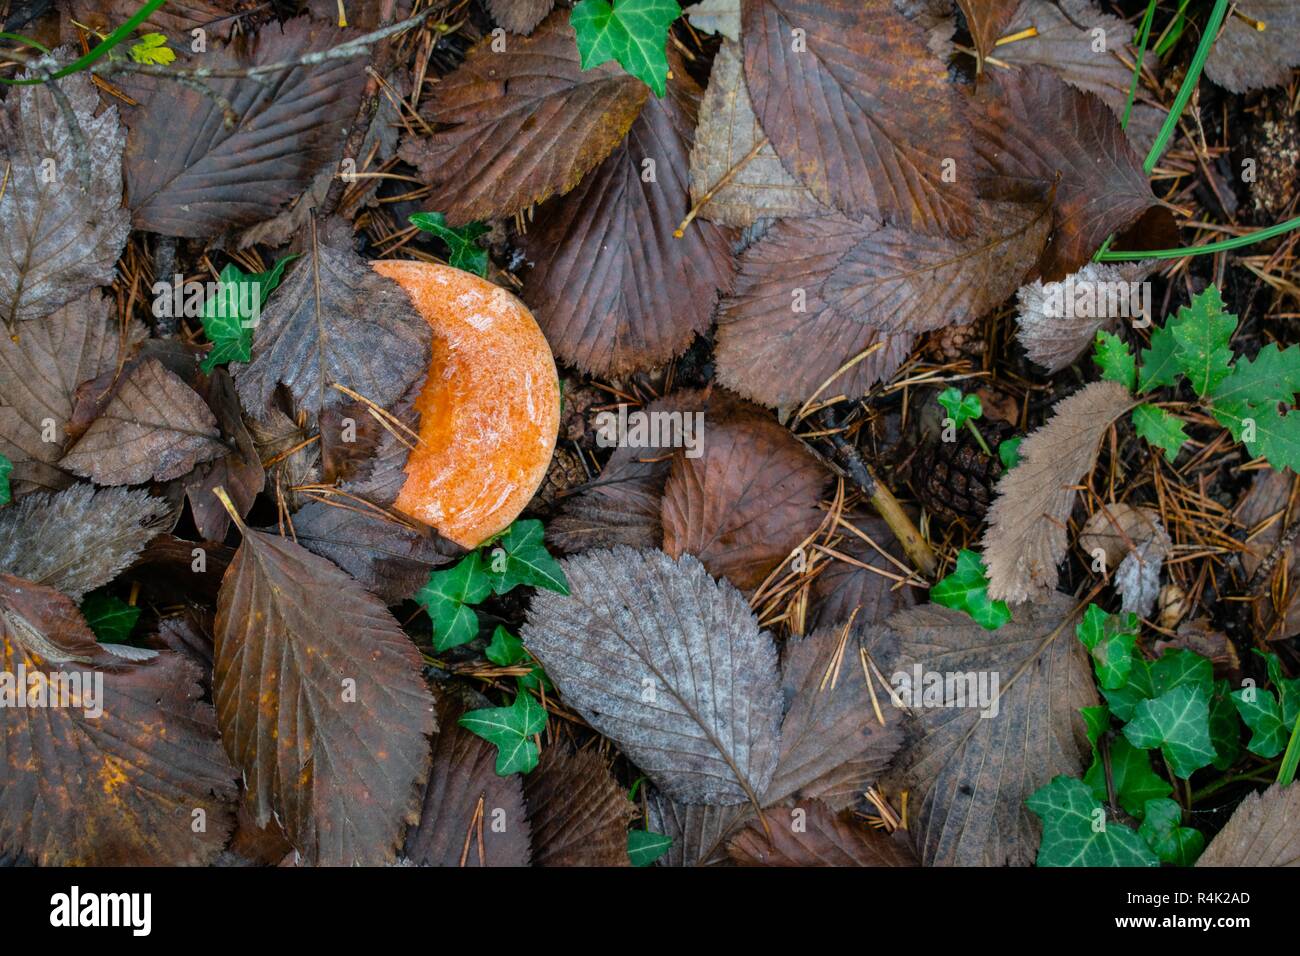 Lactarius deliciosus, the saffron milk cap, red pine mushroom mushroom growing in the autumn forest, Berga, Spain Stock Photo